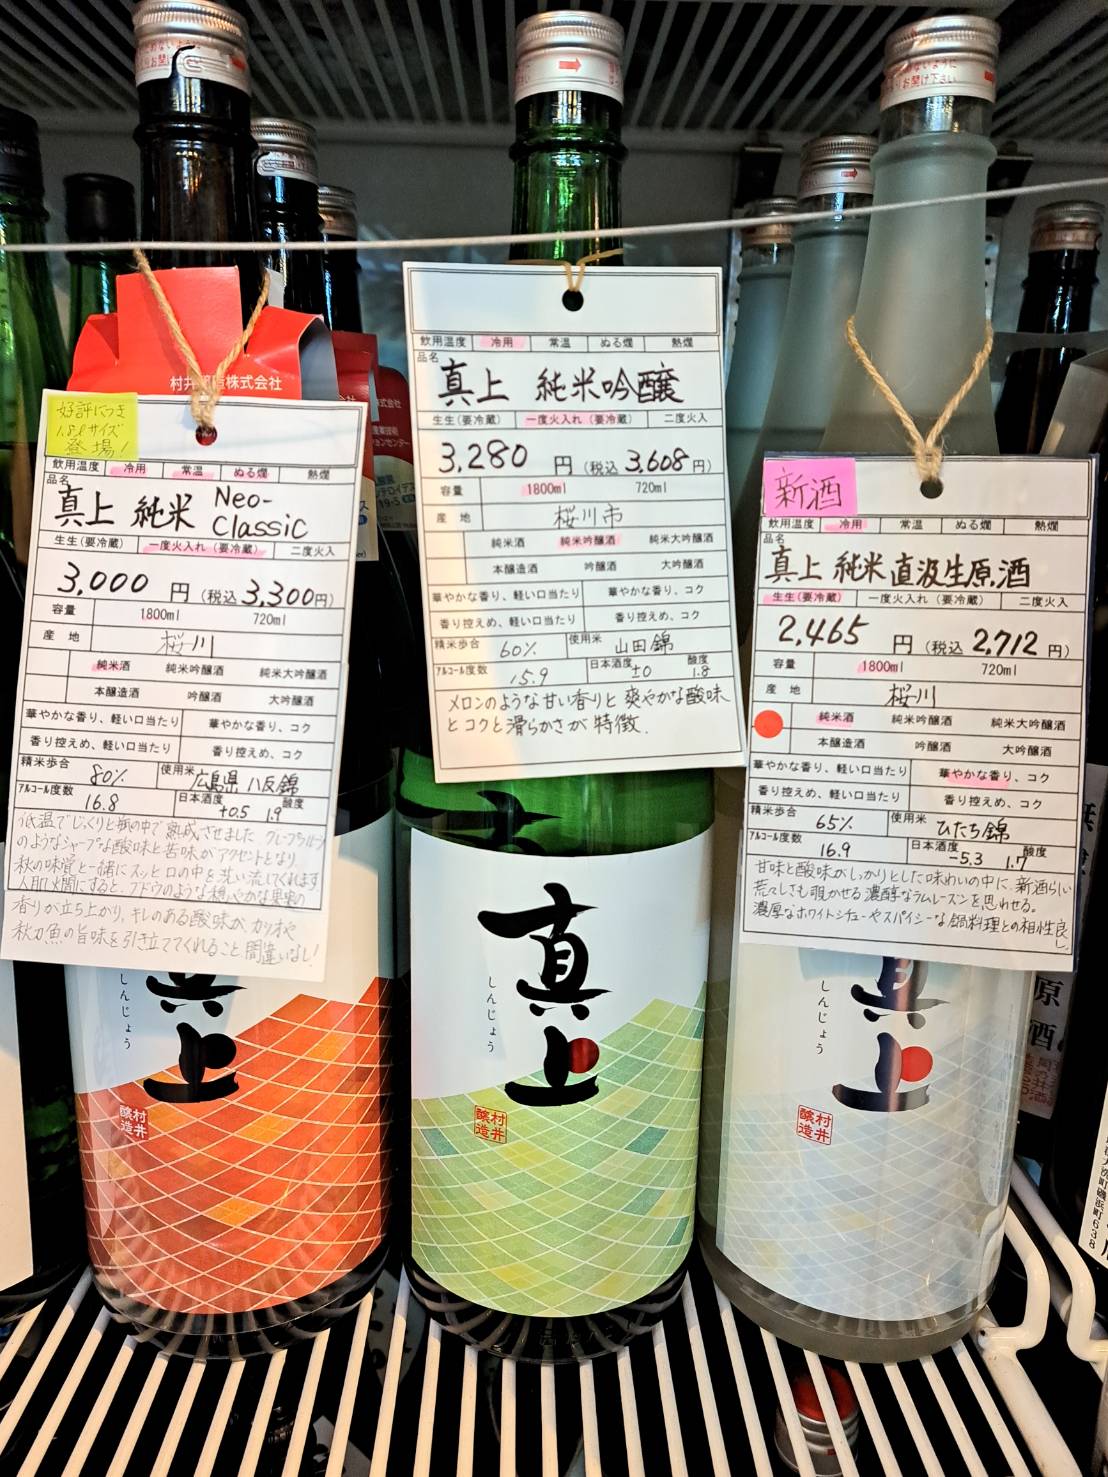 『日本酒に付いている商品札はみどりさんの手作りなんですよ』